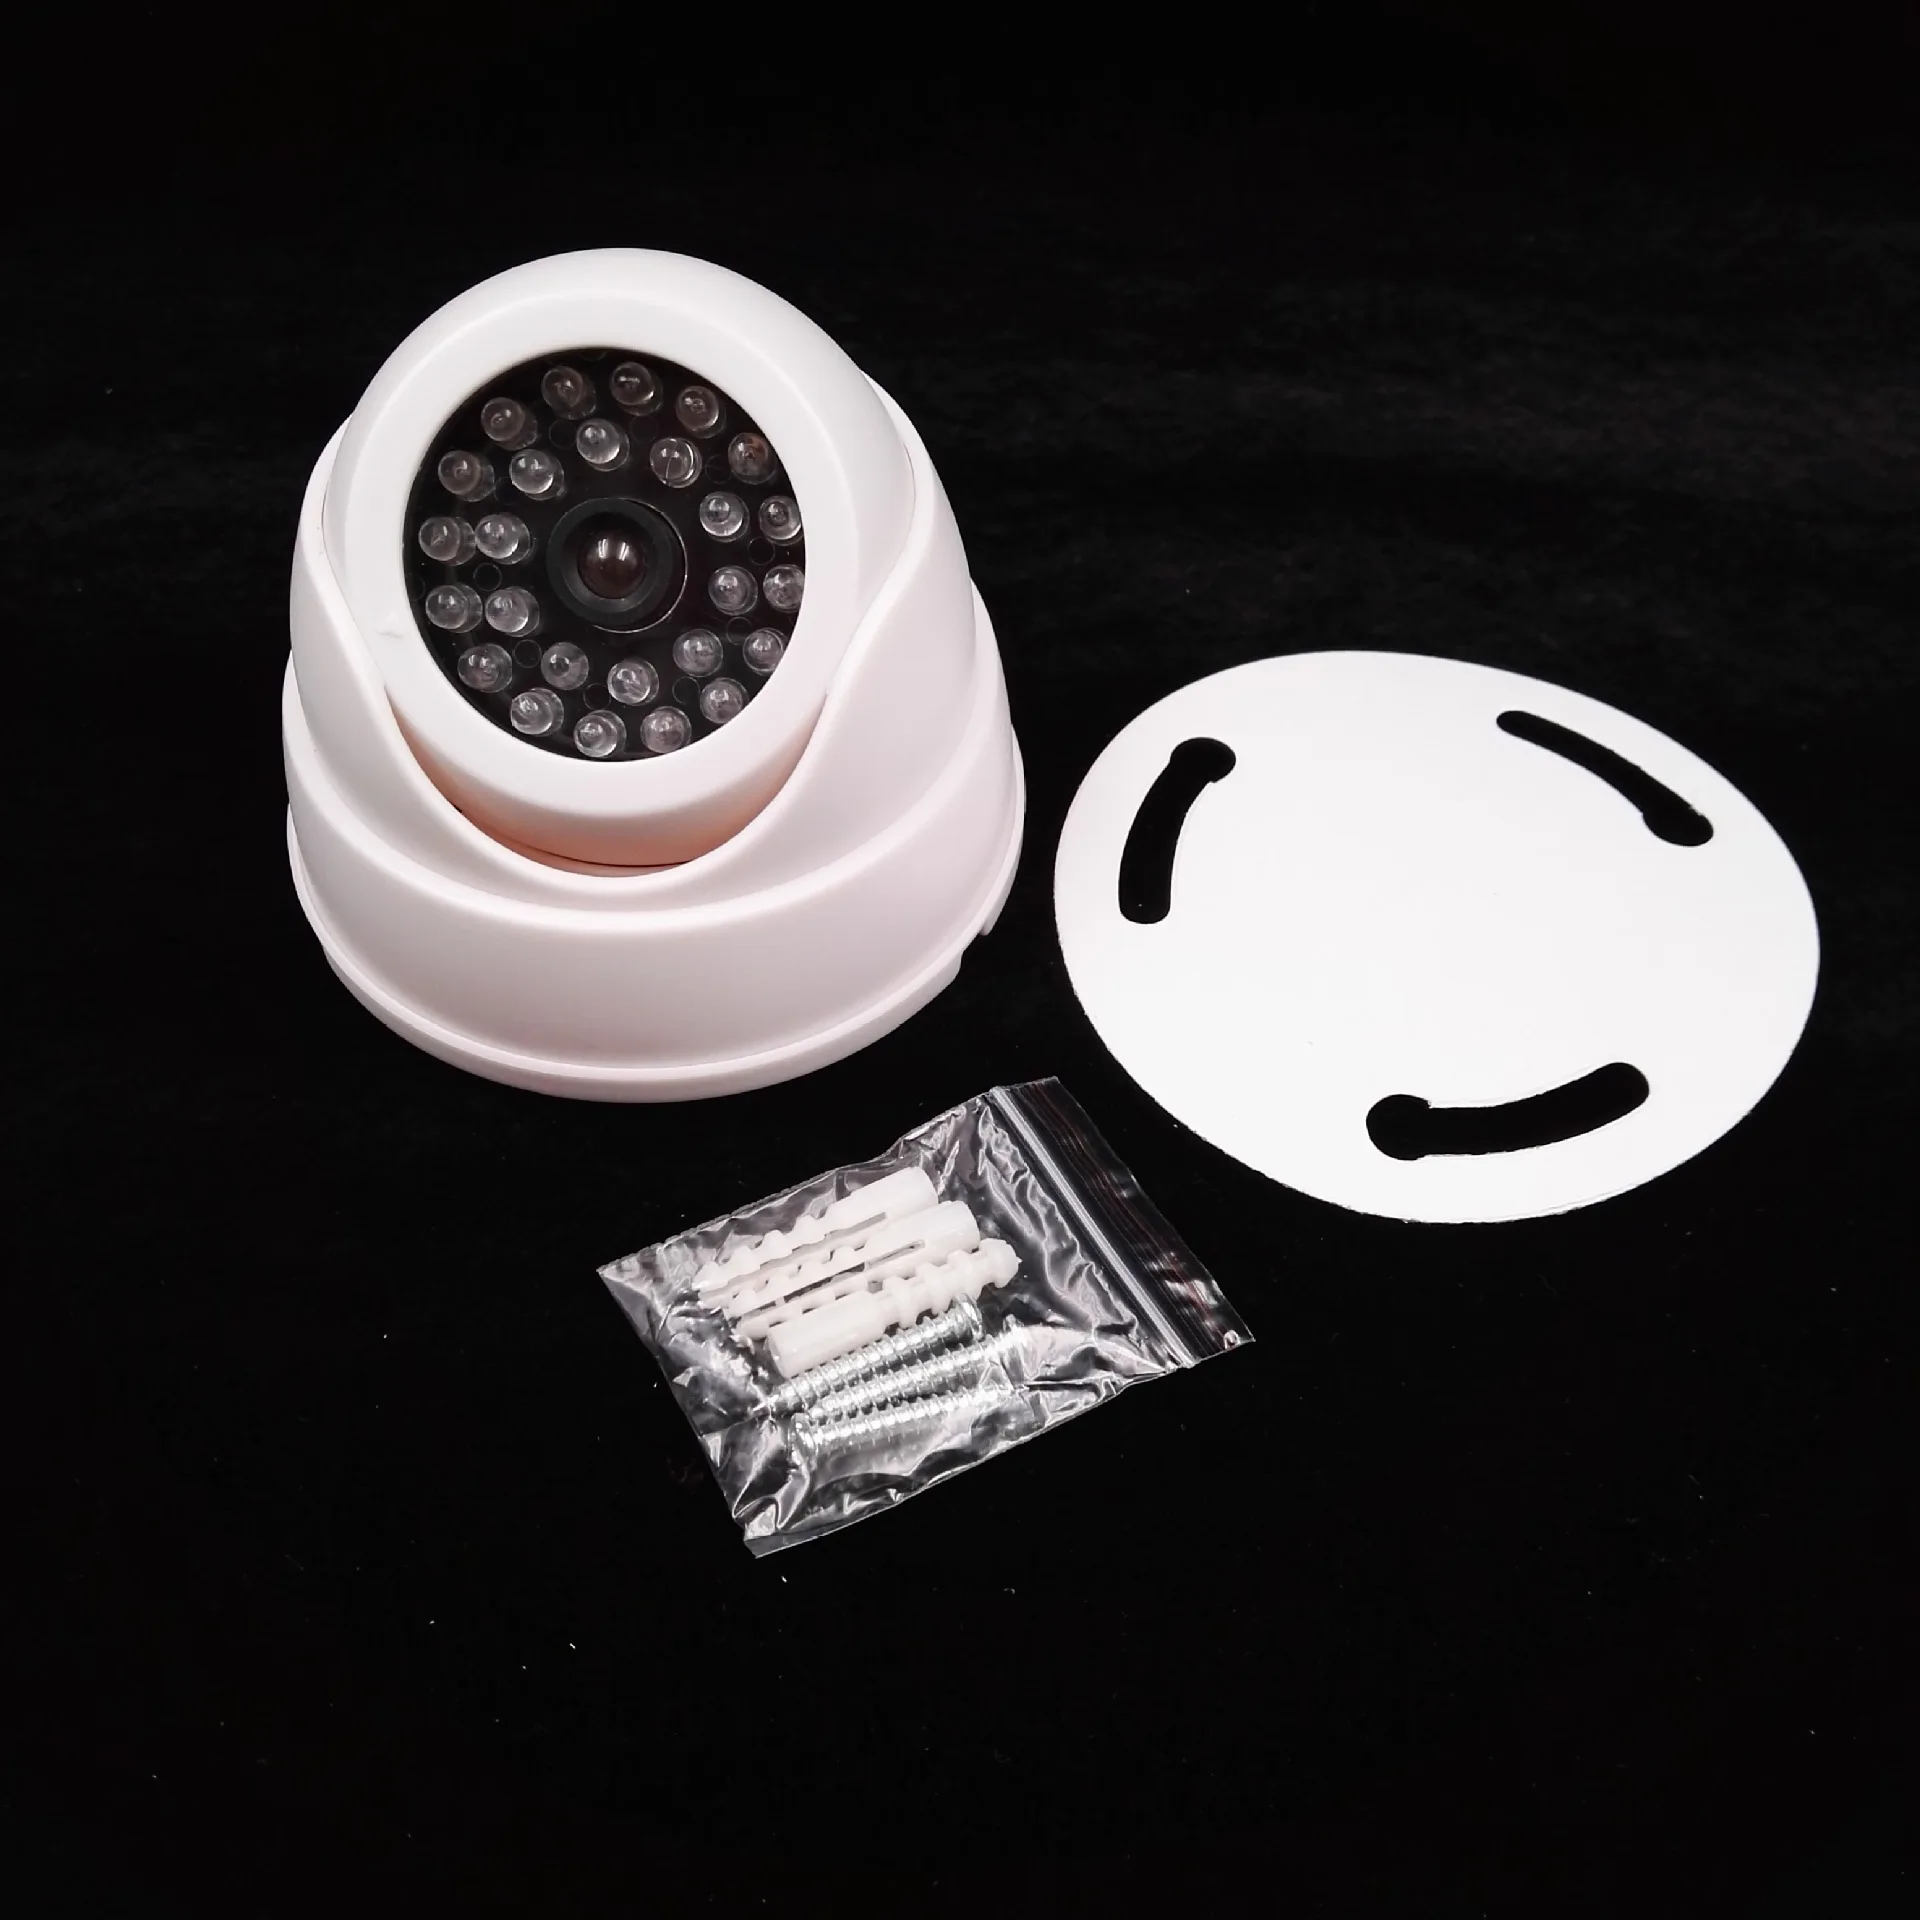 CCTV Высокое качество раковины манекен круглый высокий монитор моделирования домашний муляж системы безопасности камера черный и белый 2 цвета на выбор